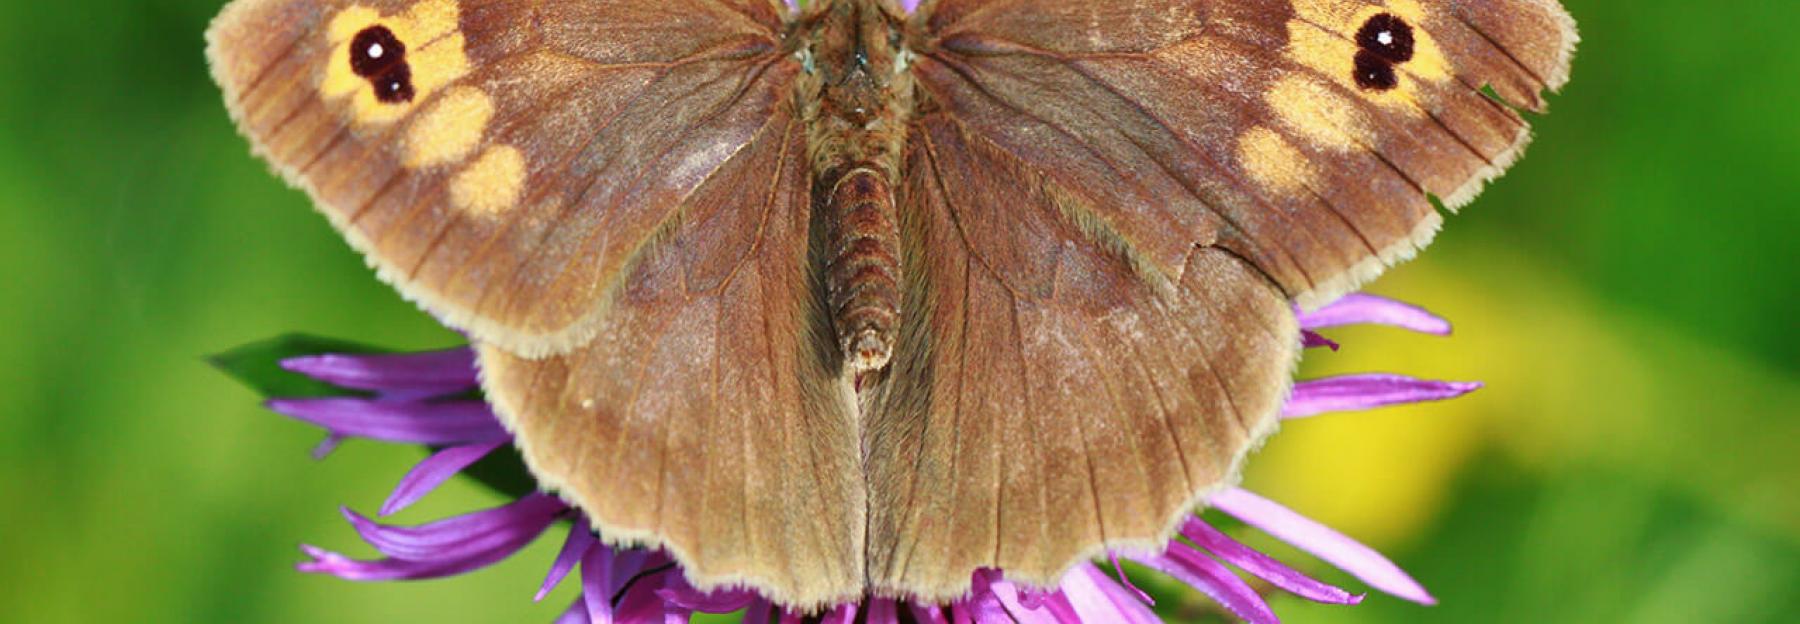 Schmetterlinge bestimmen: Großes Ochsenauge